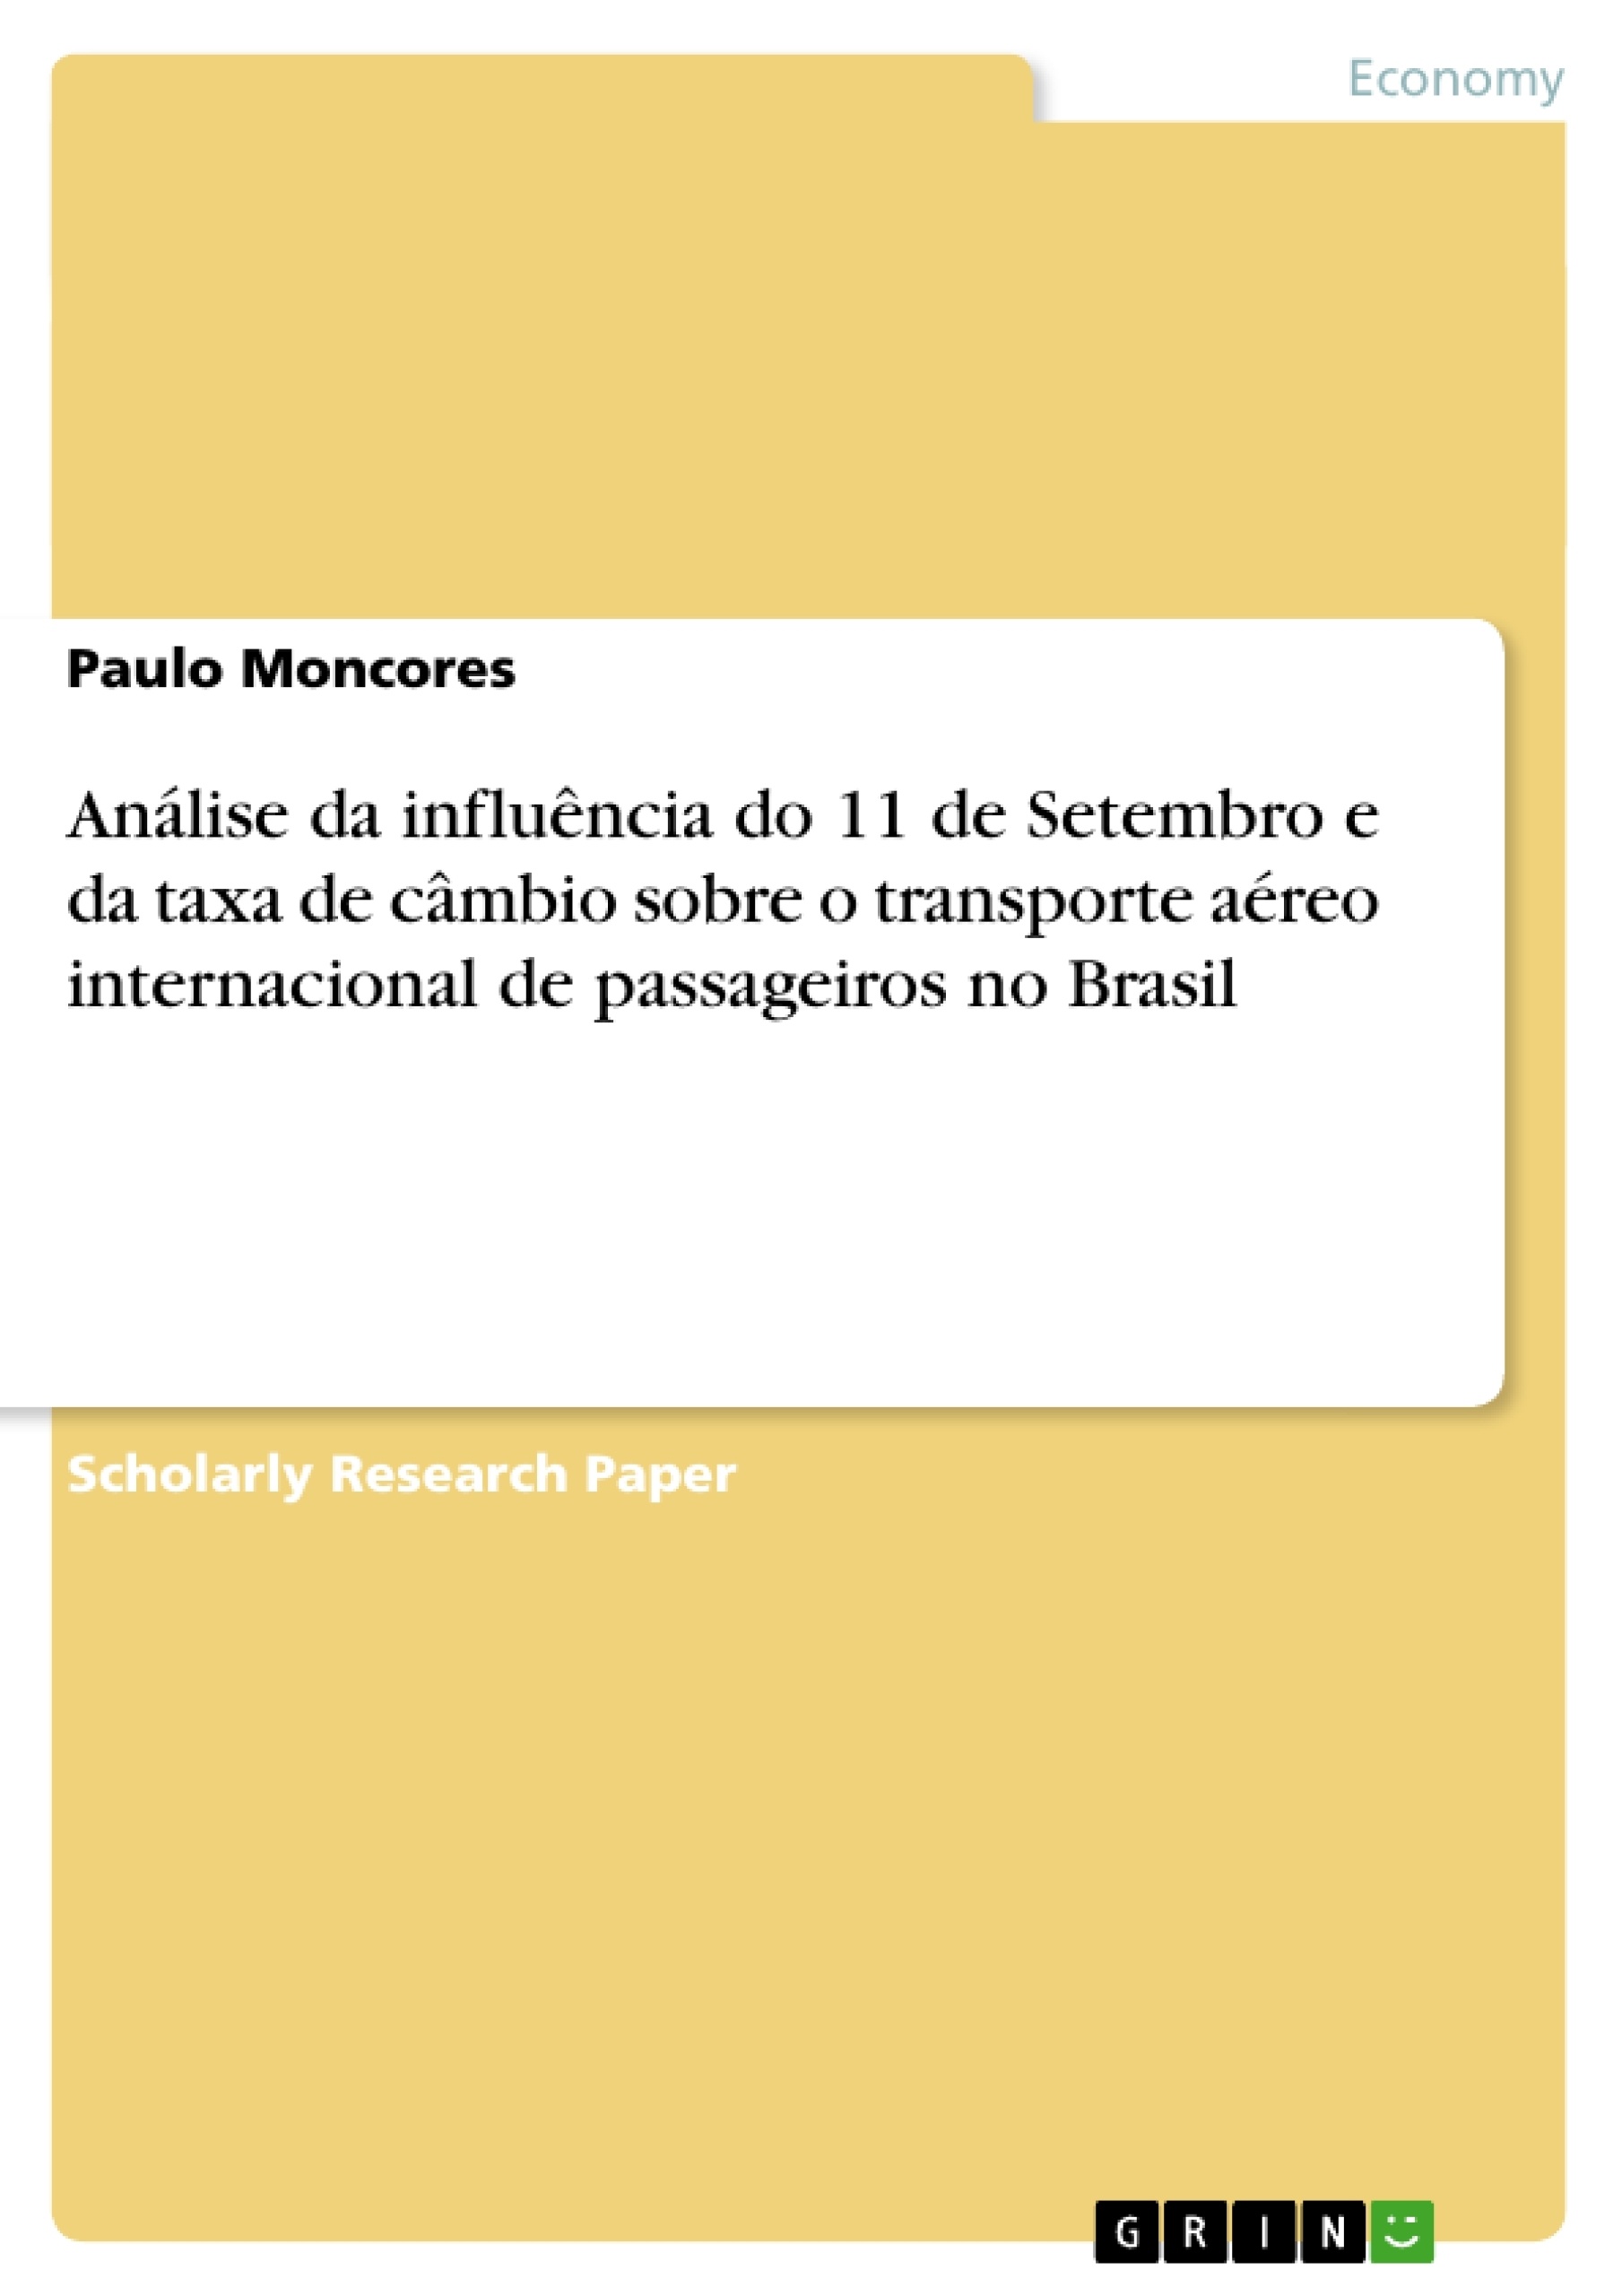 Title: Análise da influência do 11 de Setembro e da taxa de câmbio sobre o transporte aéreo internacional de passageiros no Brasil 